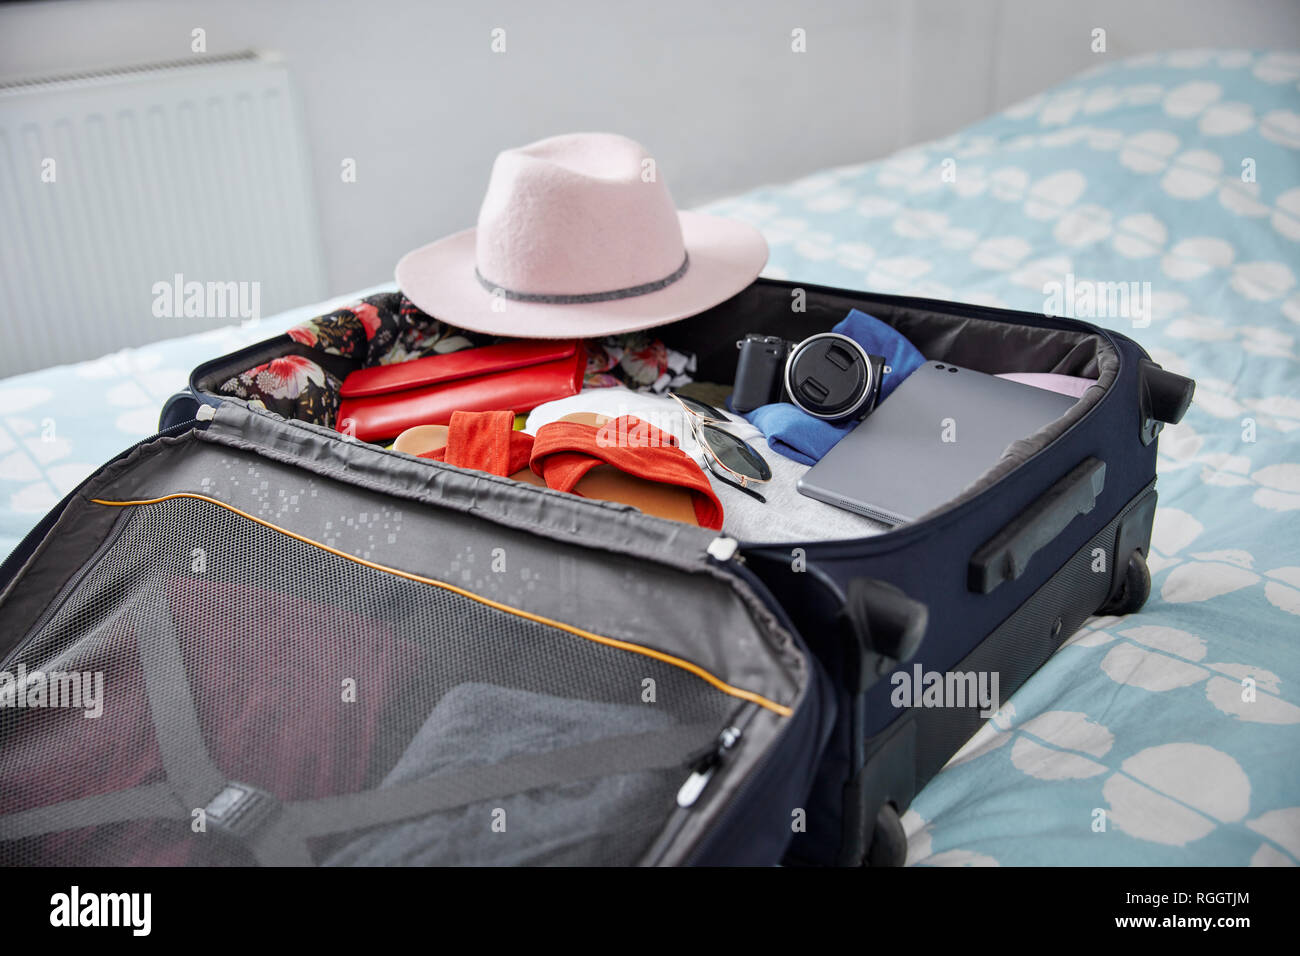 Maleta con utensilios de vacaciones de verano en la cama Foto de stock